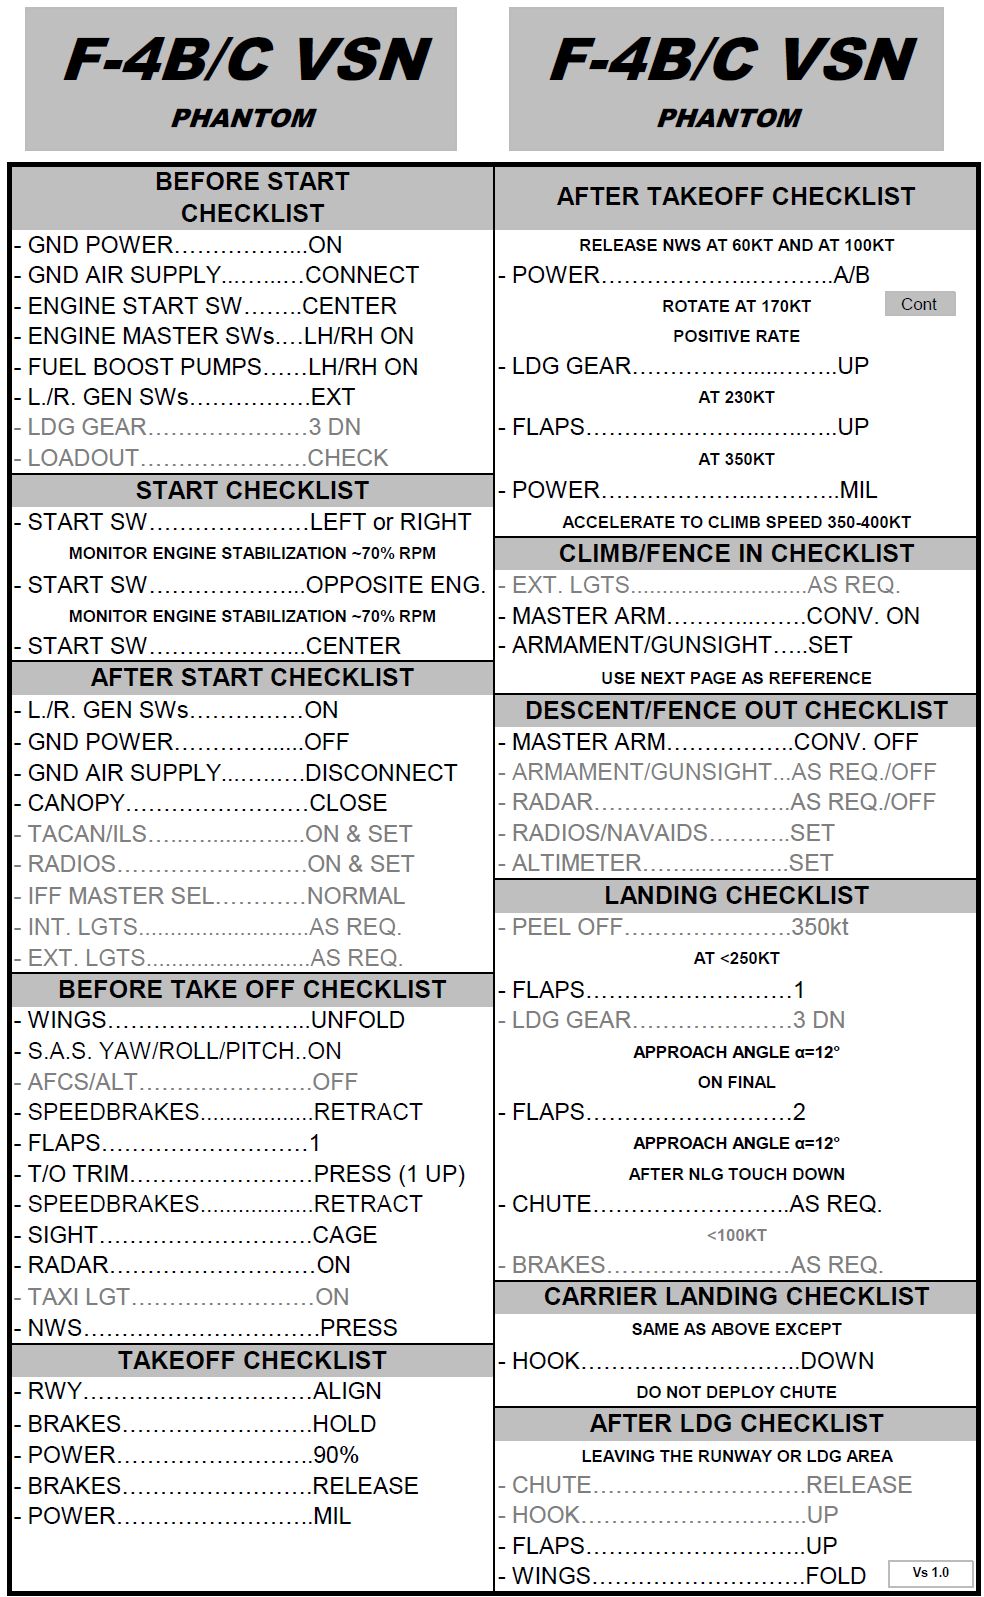 DCS F-4B/C VSN MOD Quick Checklist (vs 1.0)